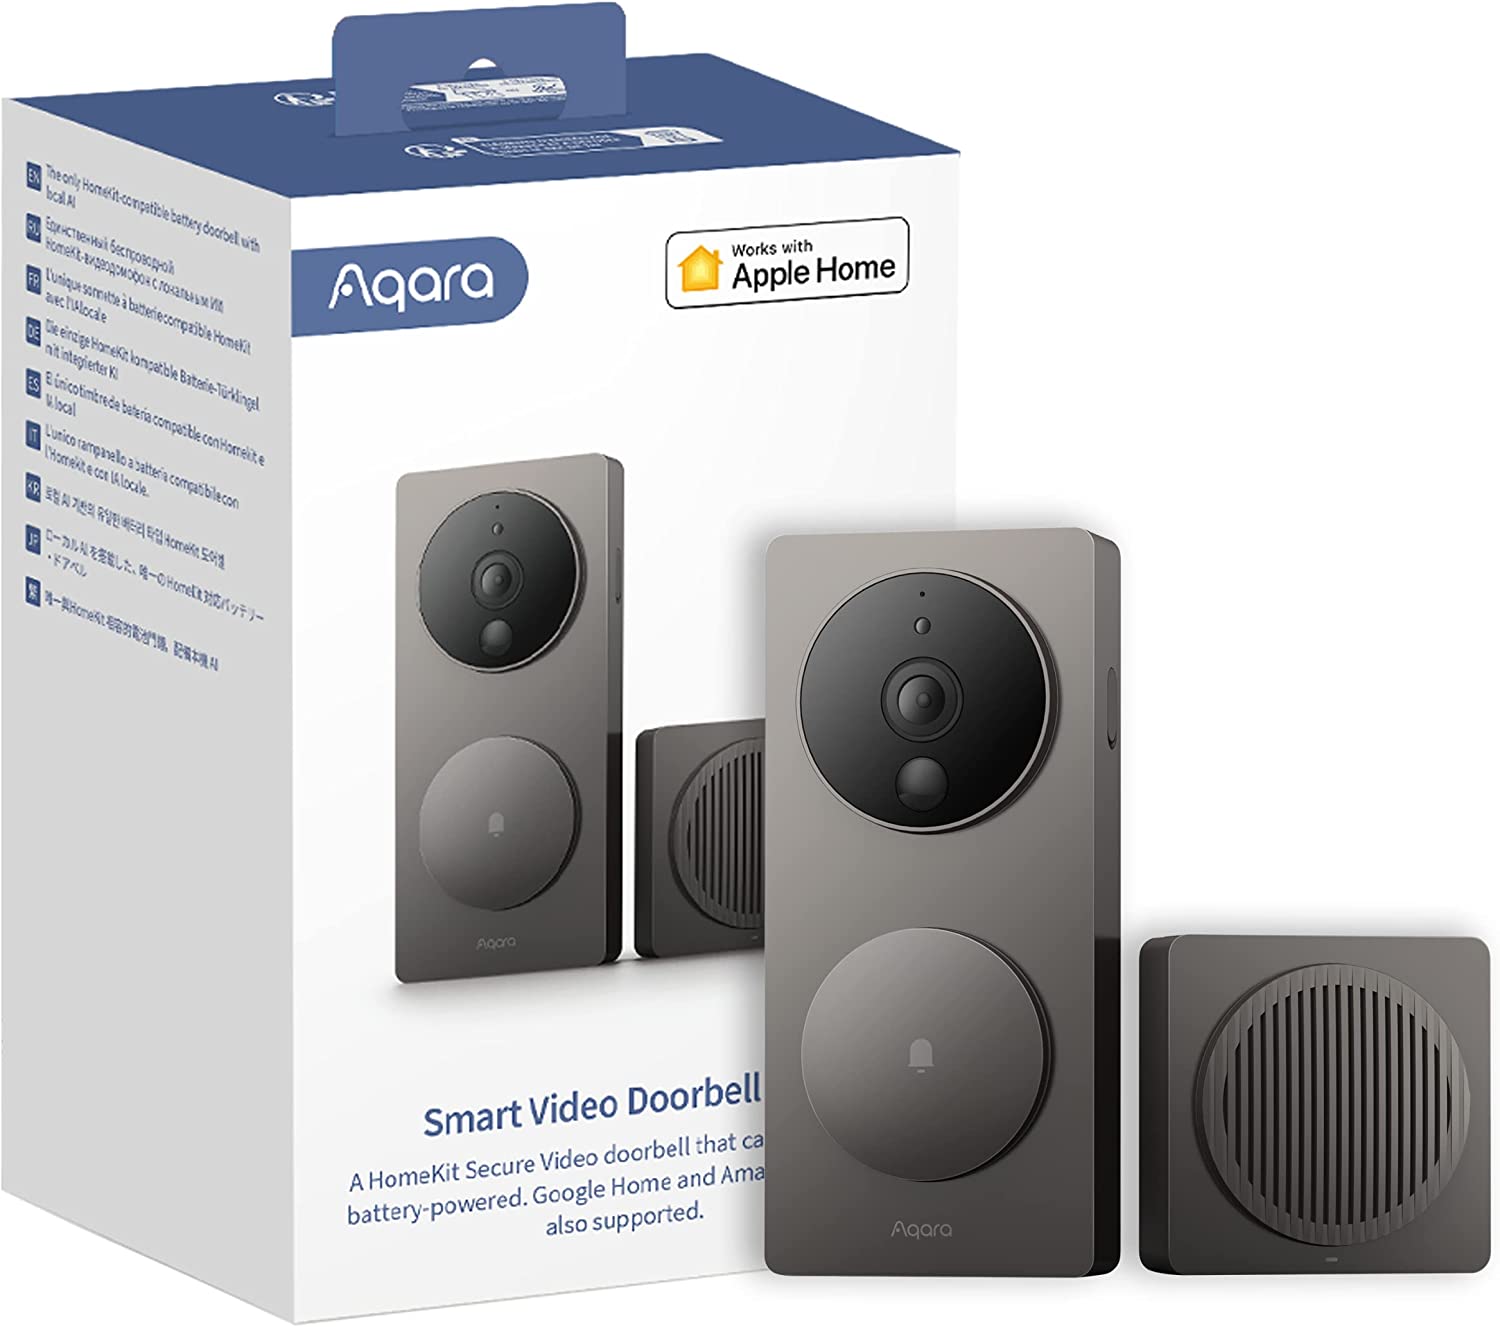 Aqara G4 Video Doorbell